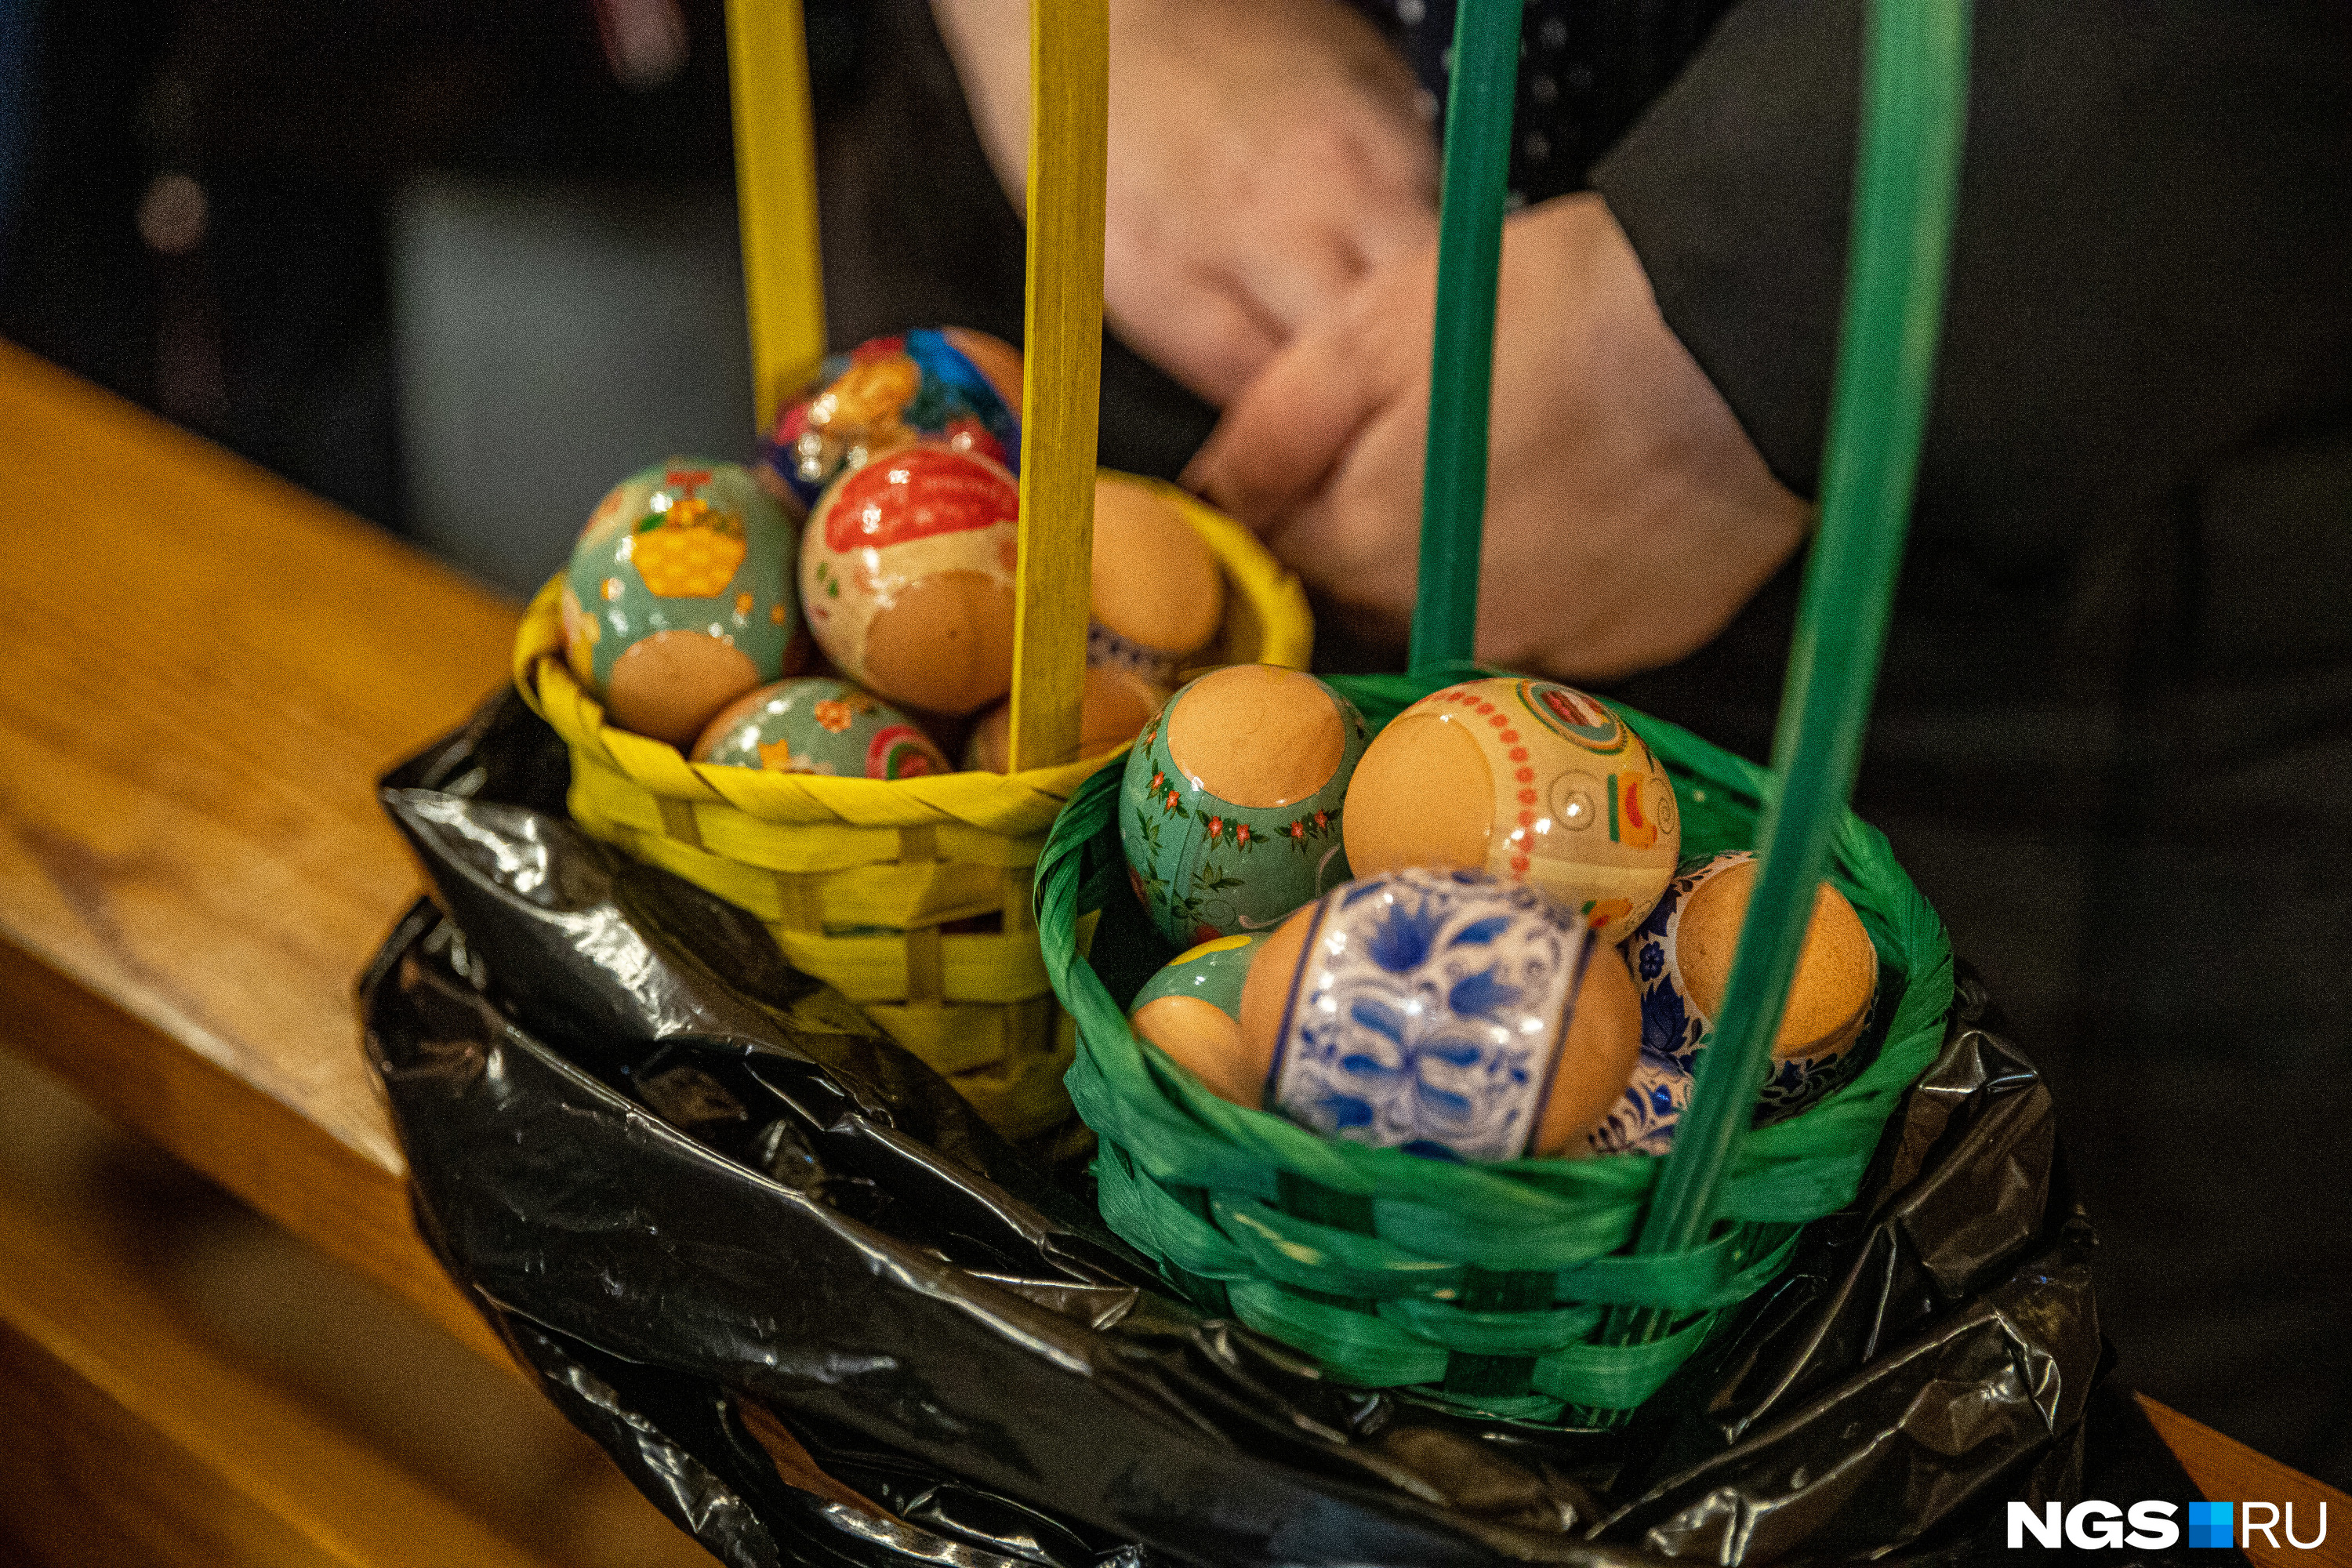 Как и в православной церкви, прихожане-католики приносят яйца и куличи для освящения